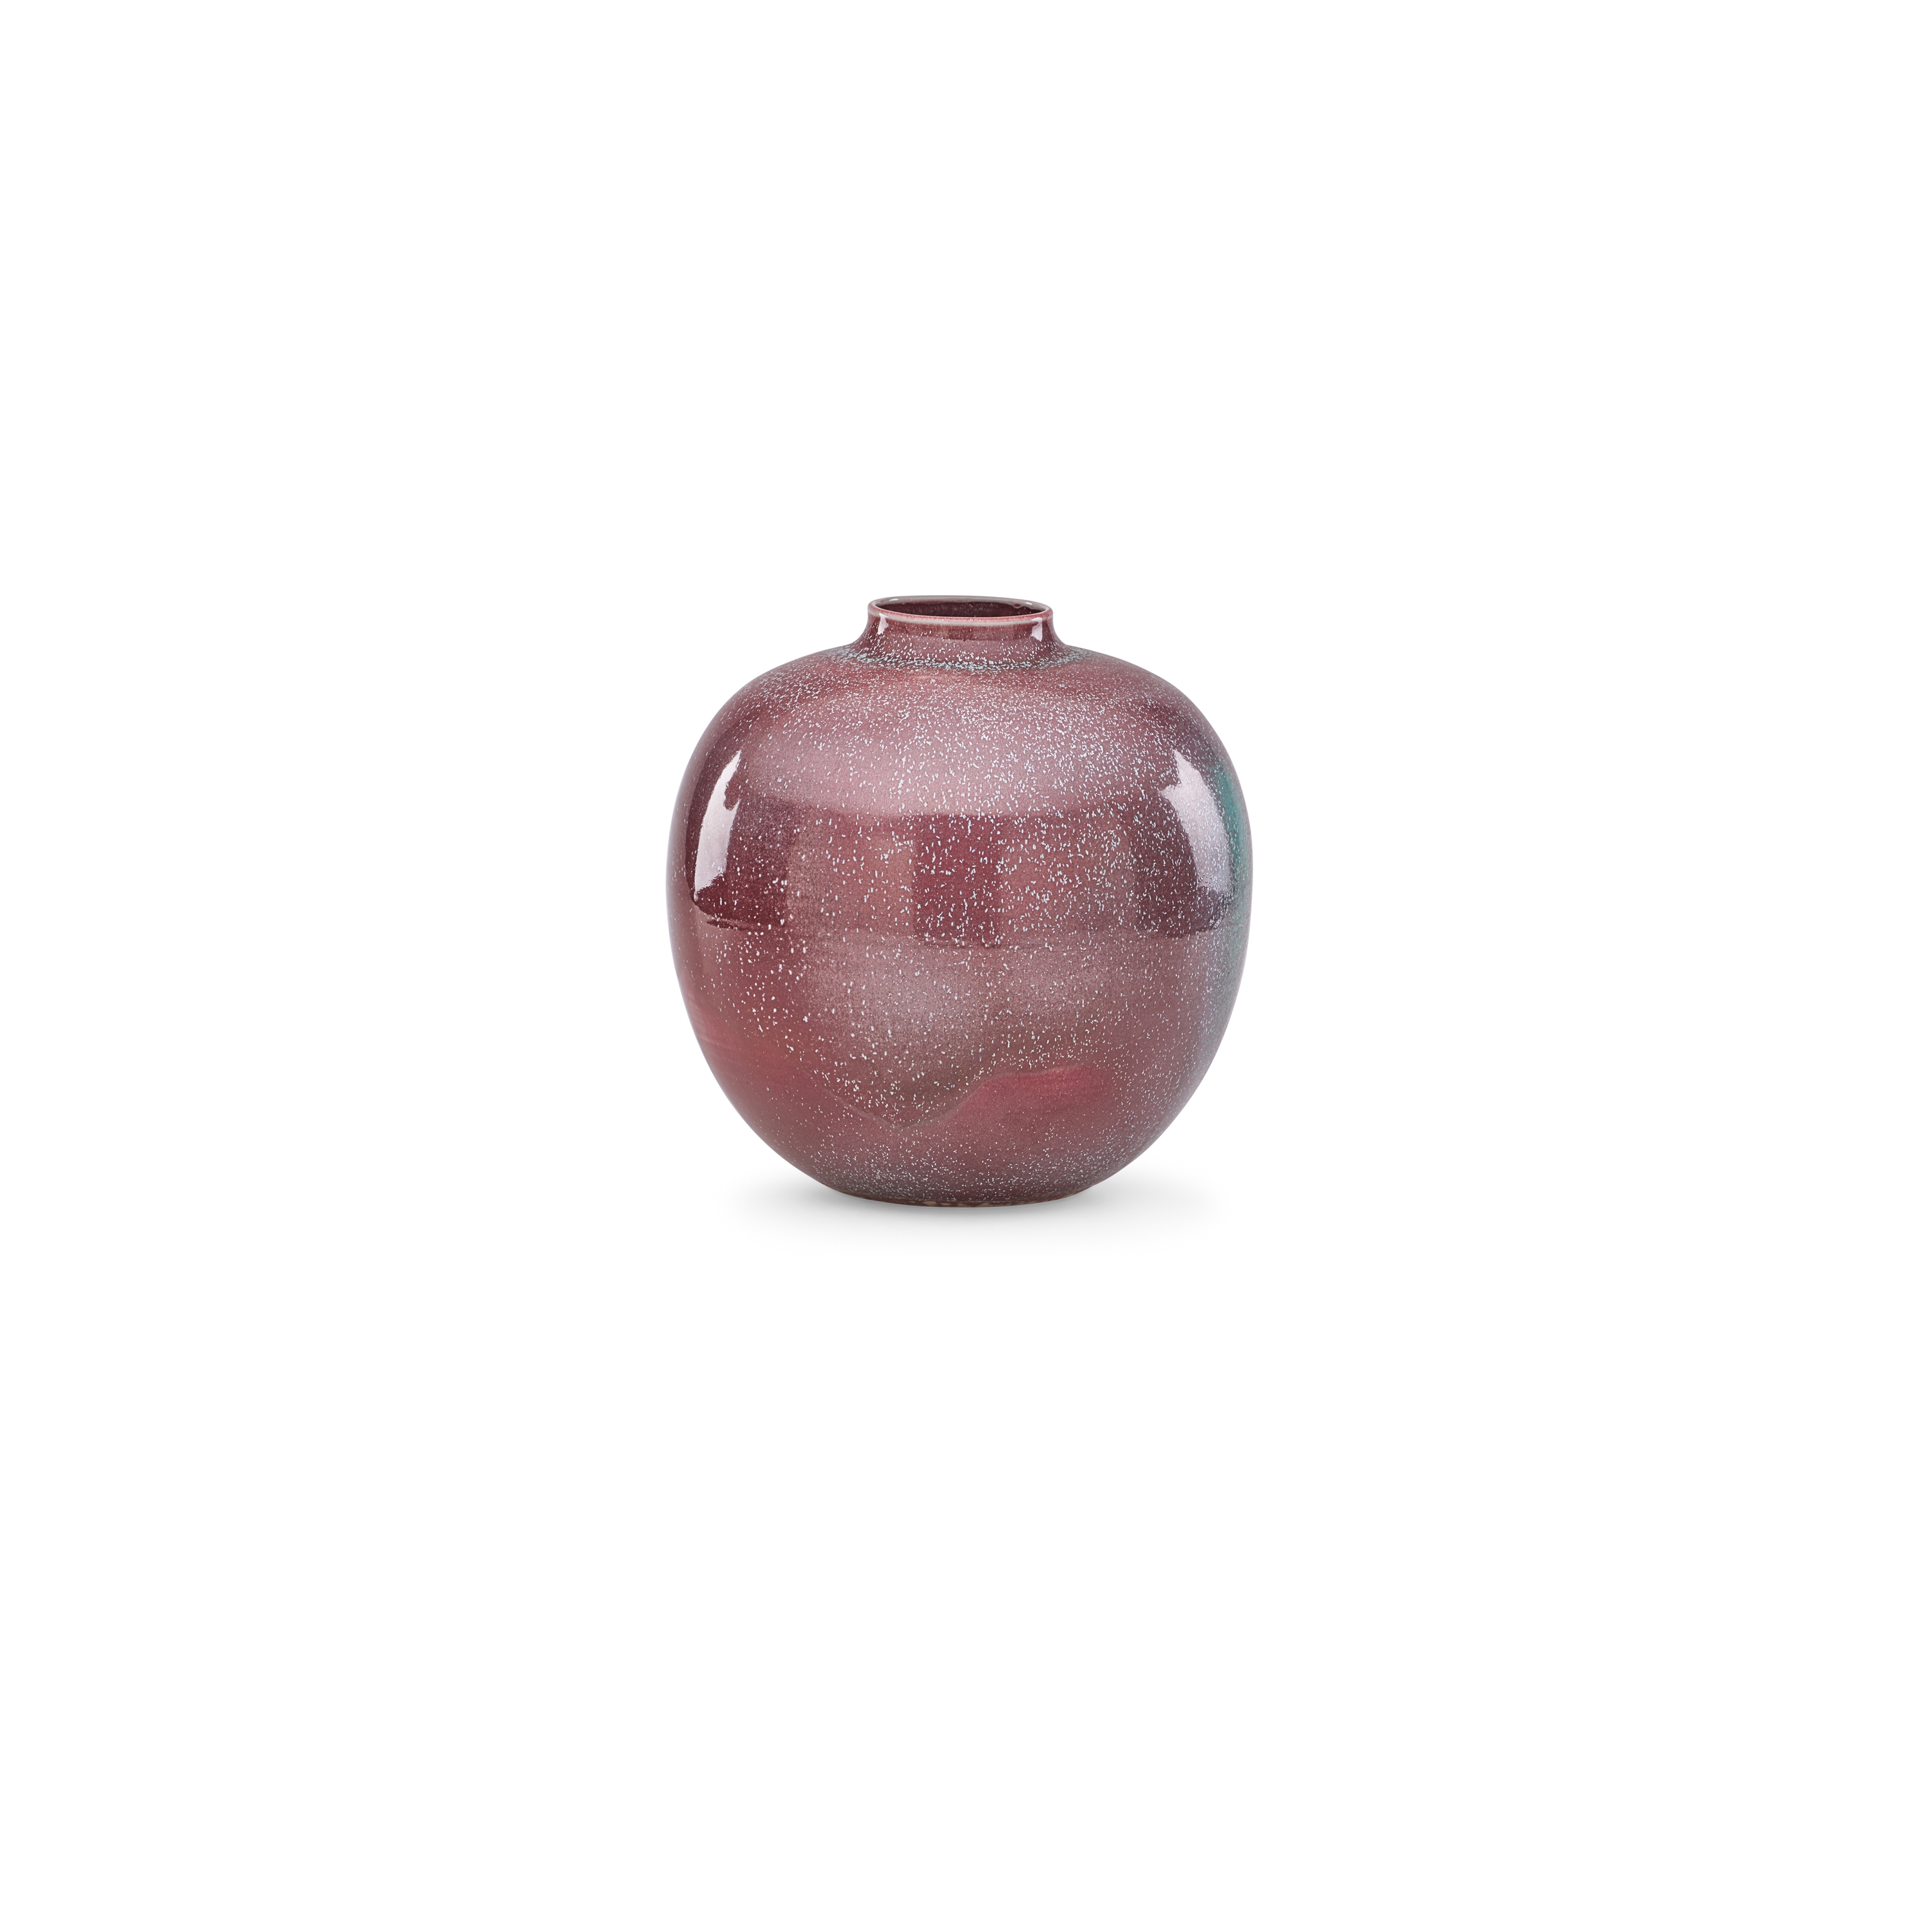 1544: CLIFF LEE, Fine Porcelain Vase < Modern Ceramics & Glass, 24